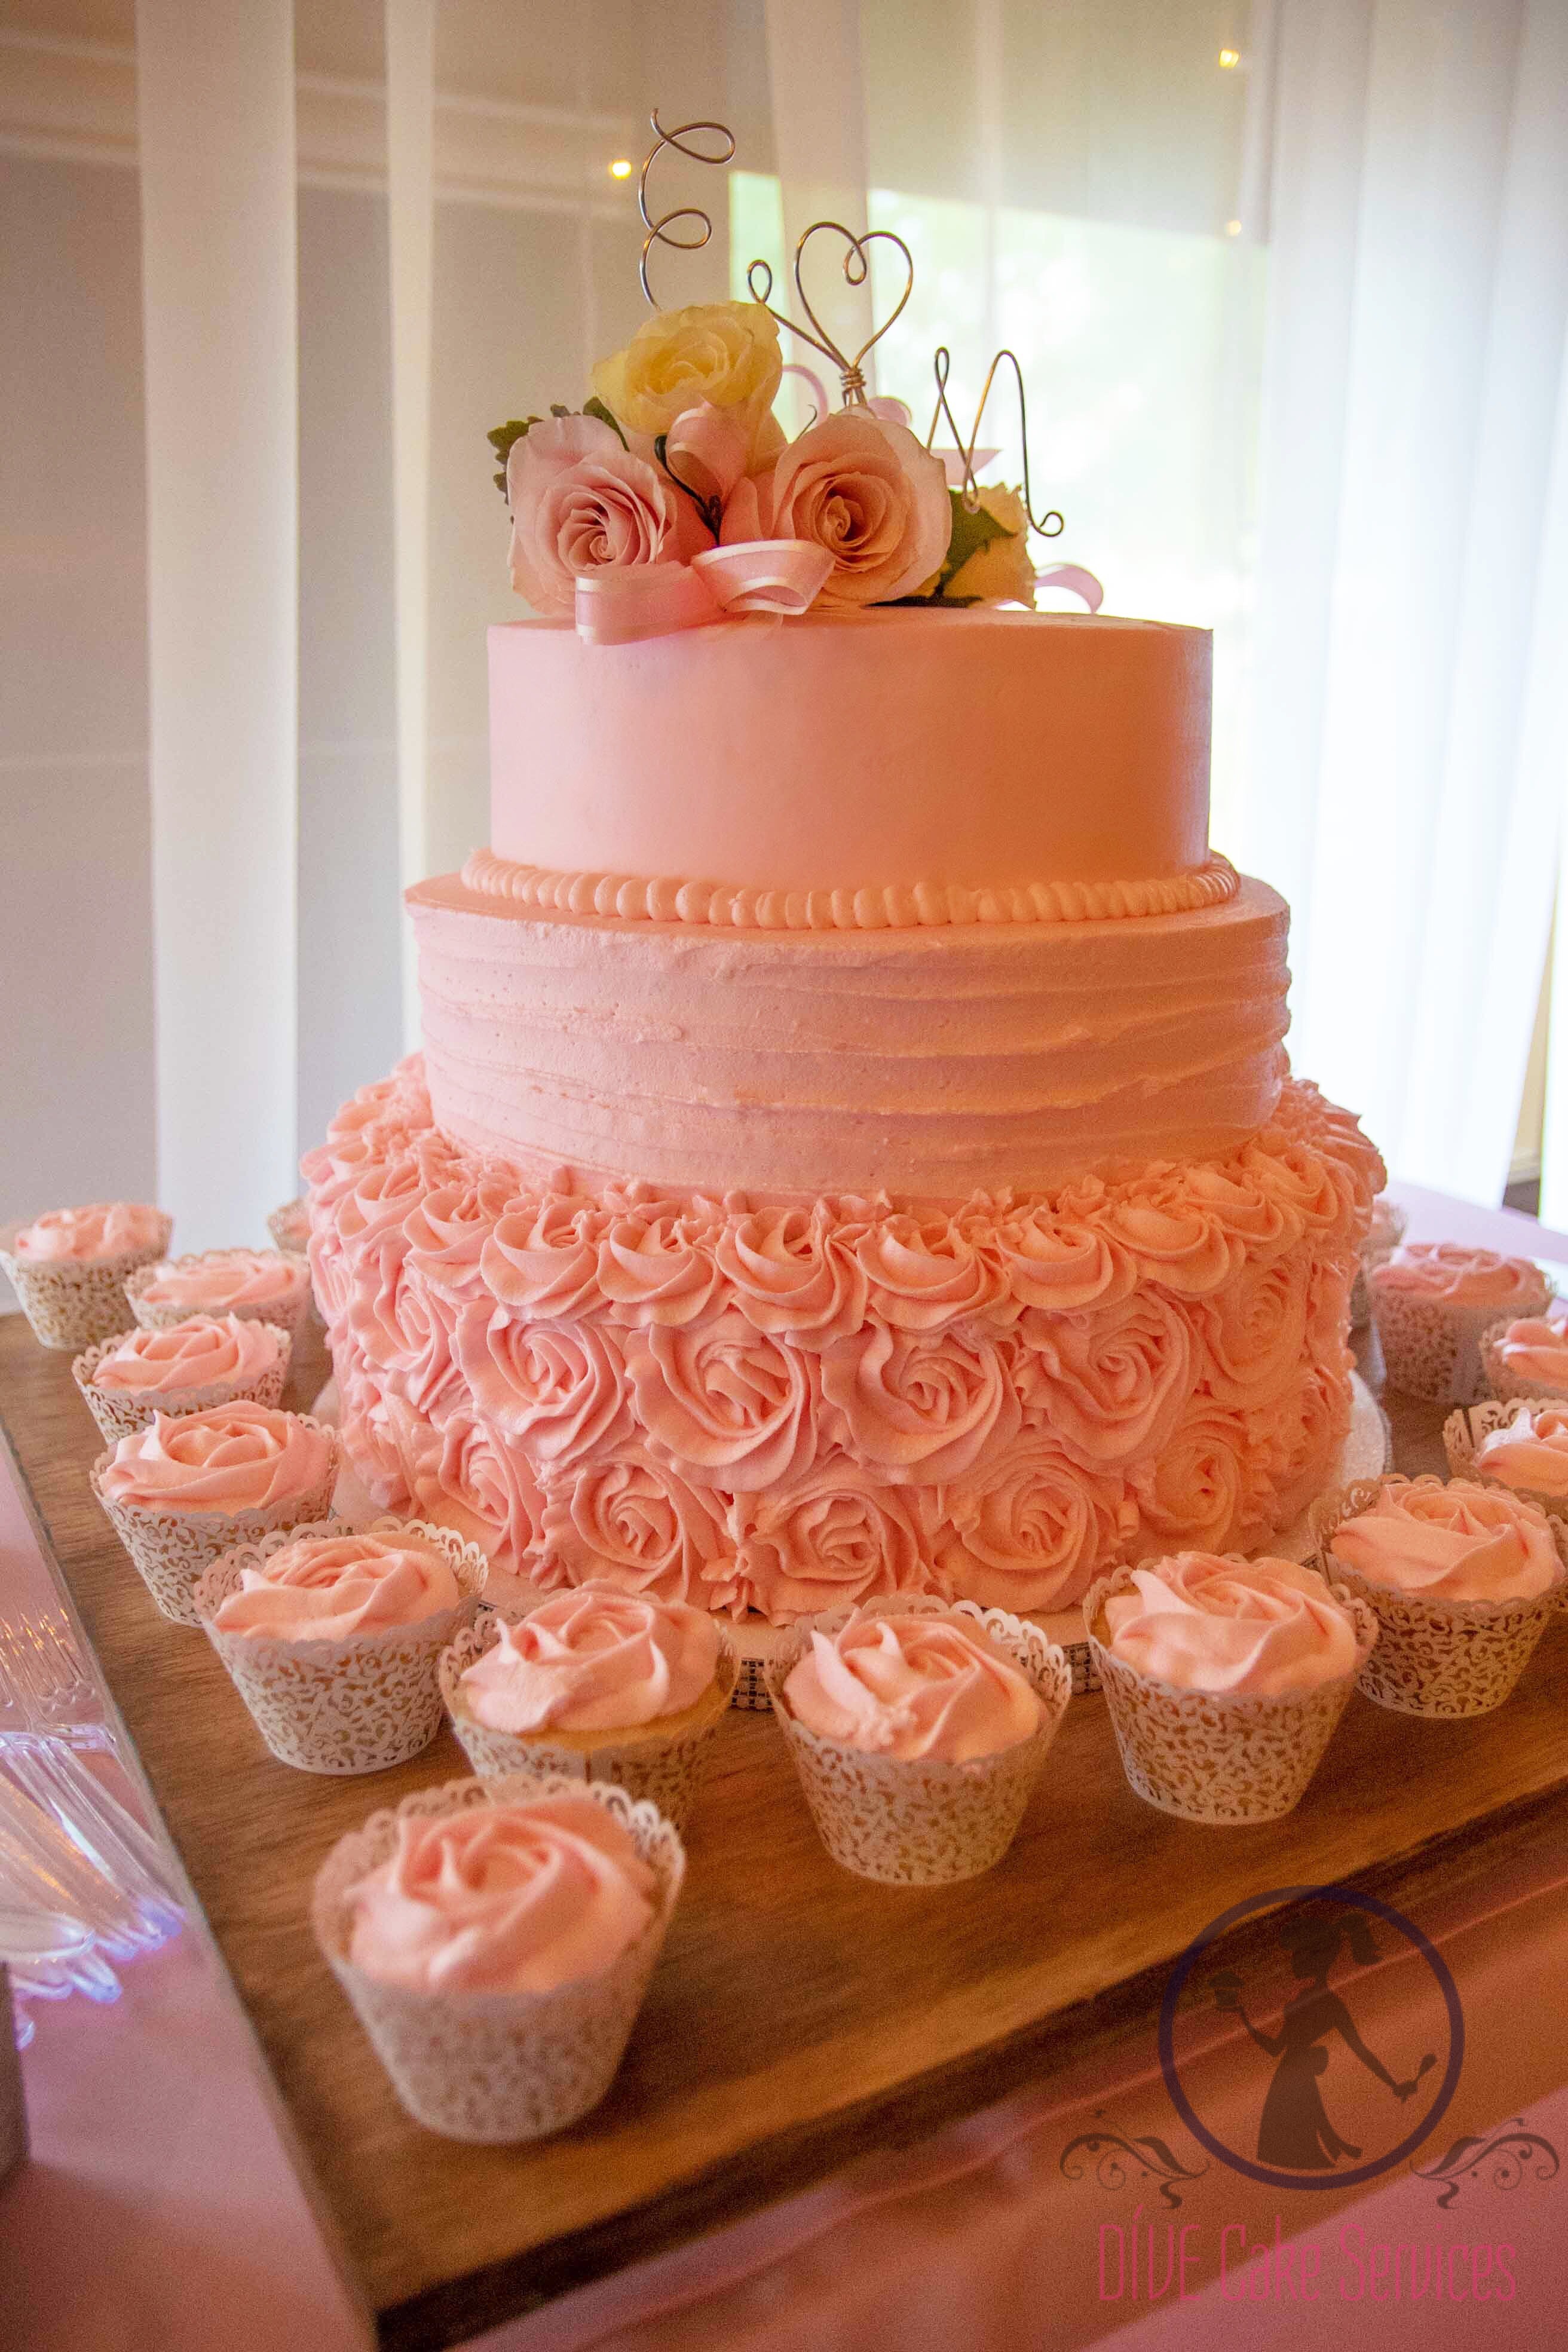 Rossette Wedding Cake